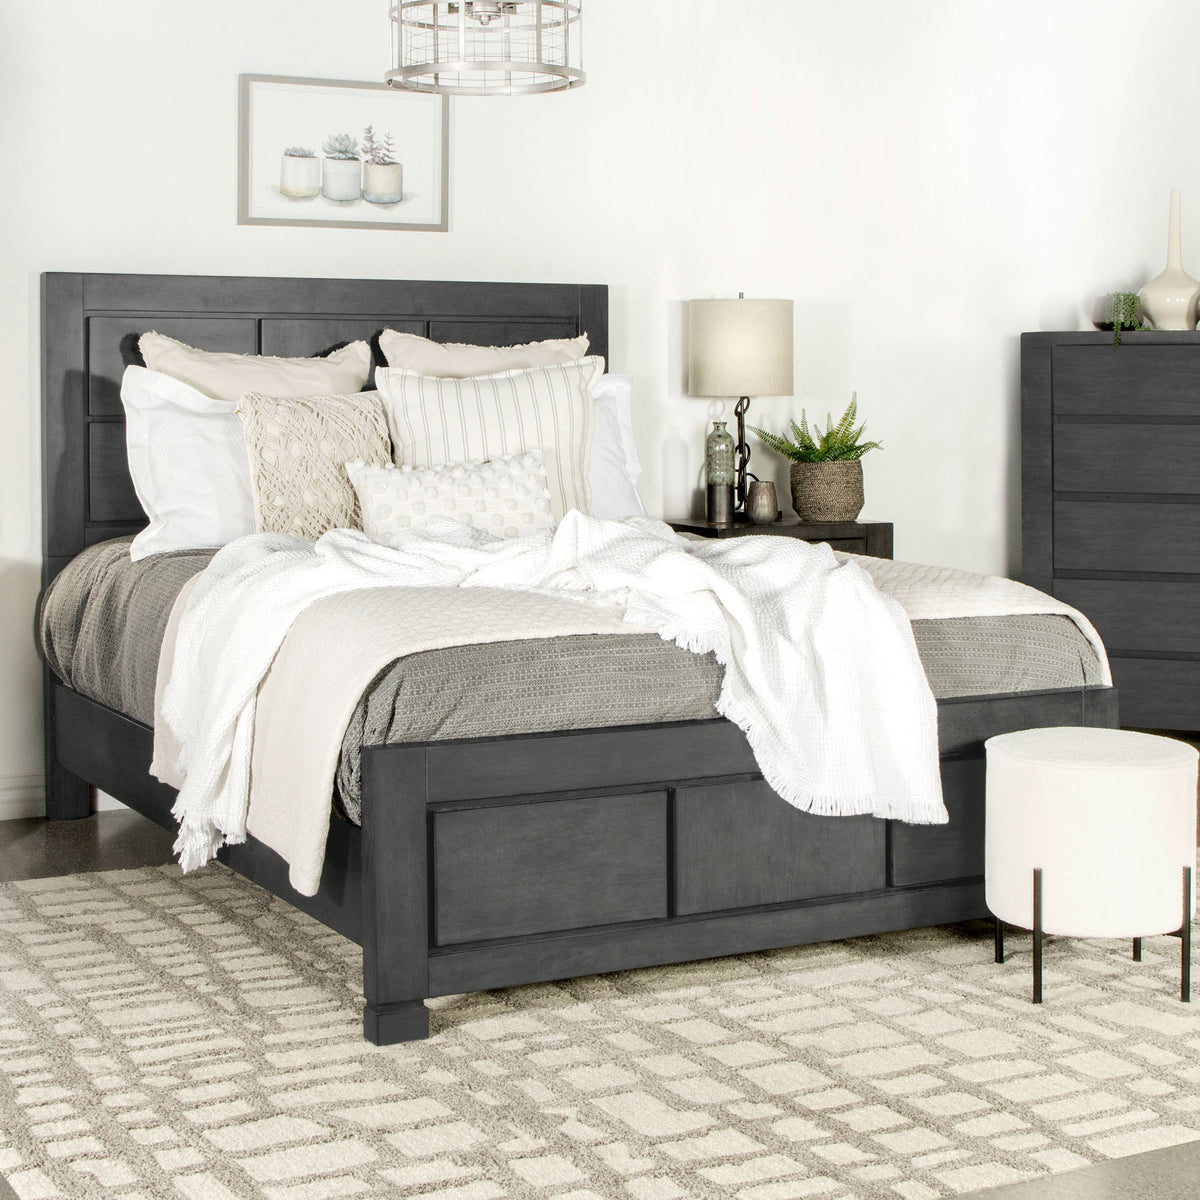 Lorenzo Rectangular Panel Bed Dark Grey  Half Price Furniture